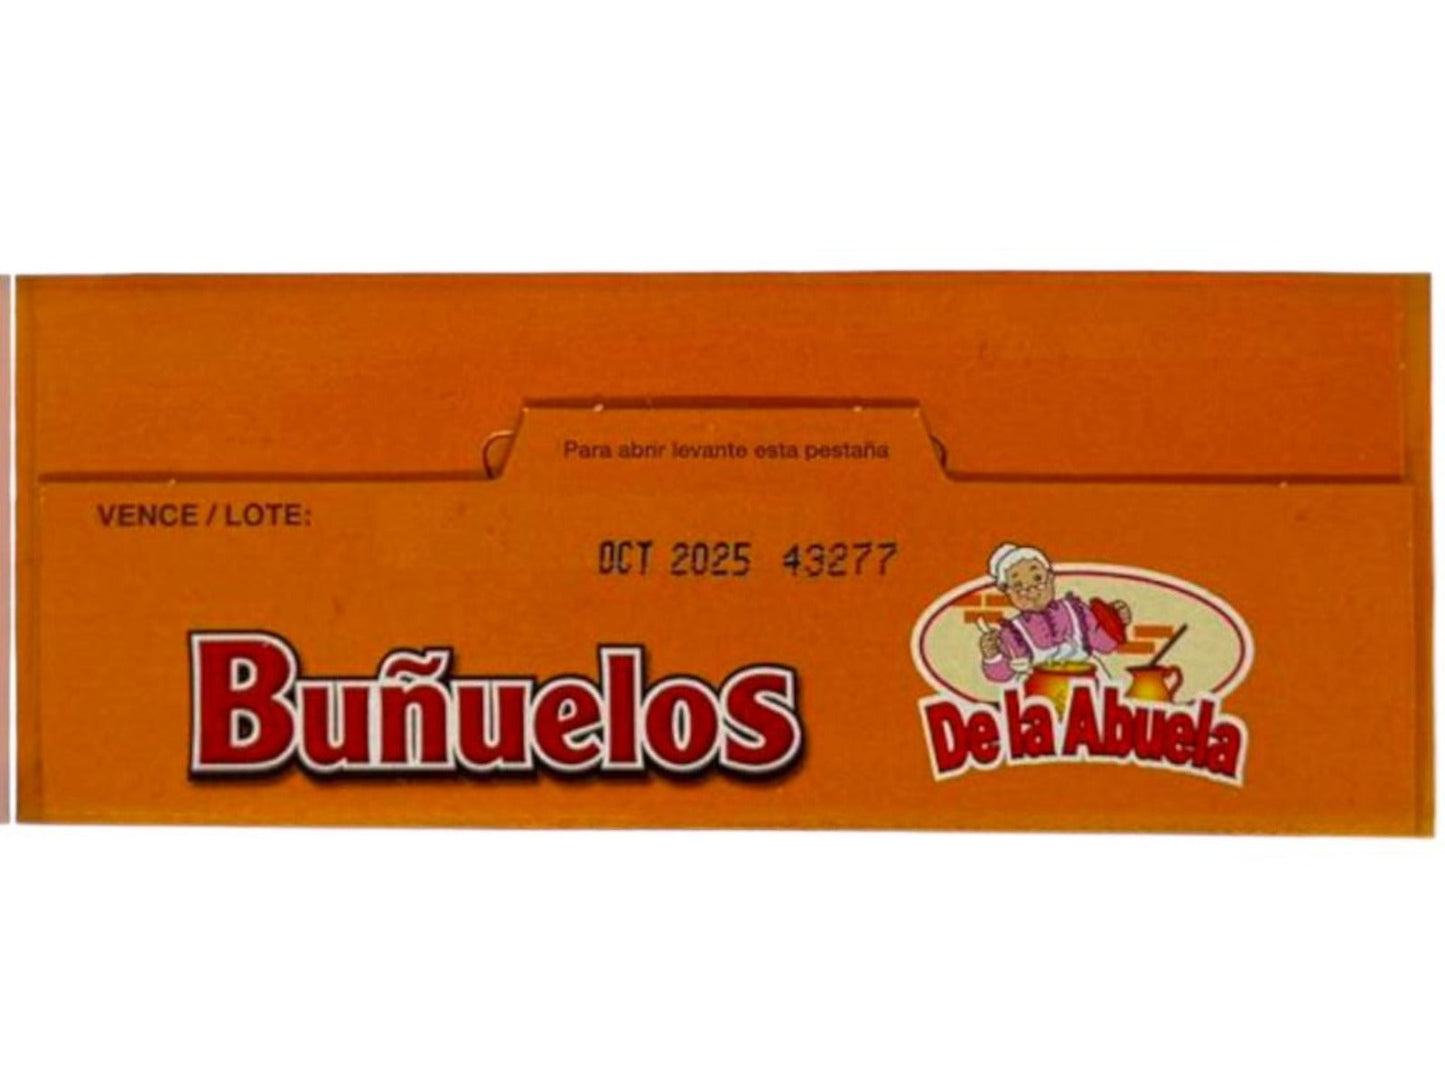 De la Abuela Bunuelos Colombian Fritters 300g ea 4 Pack 1200g Total